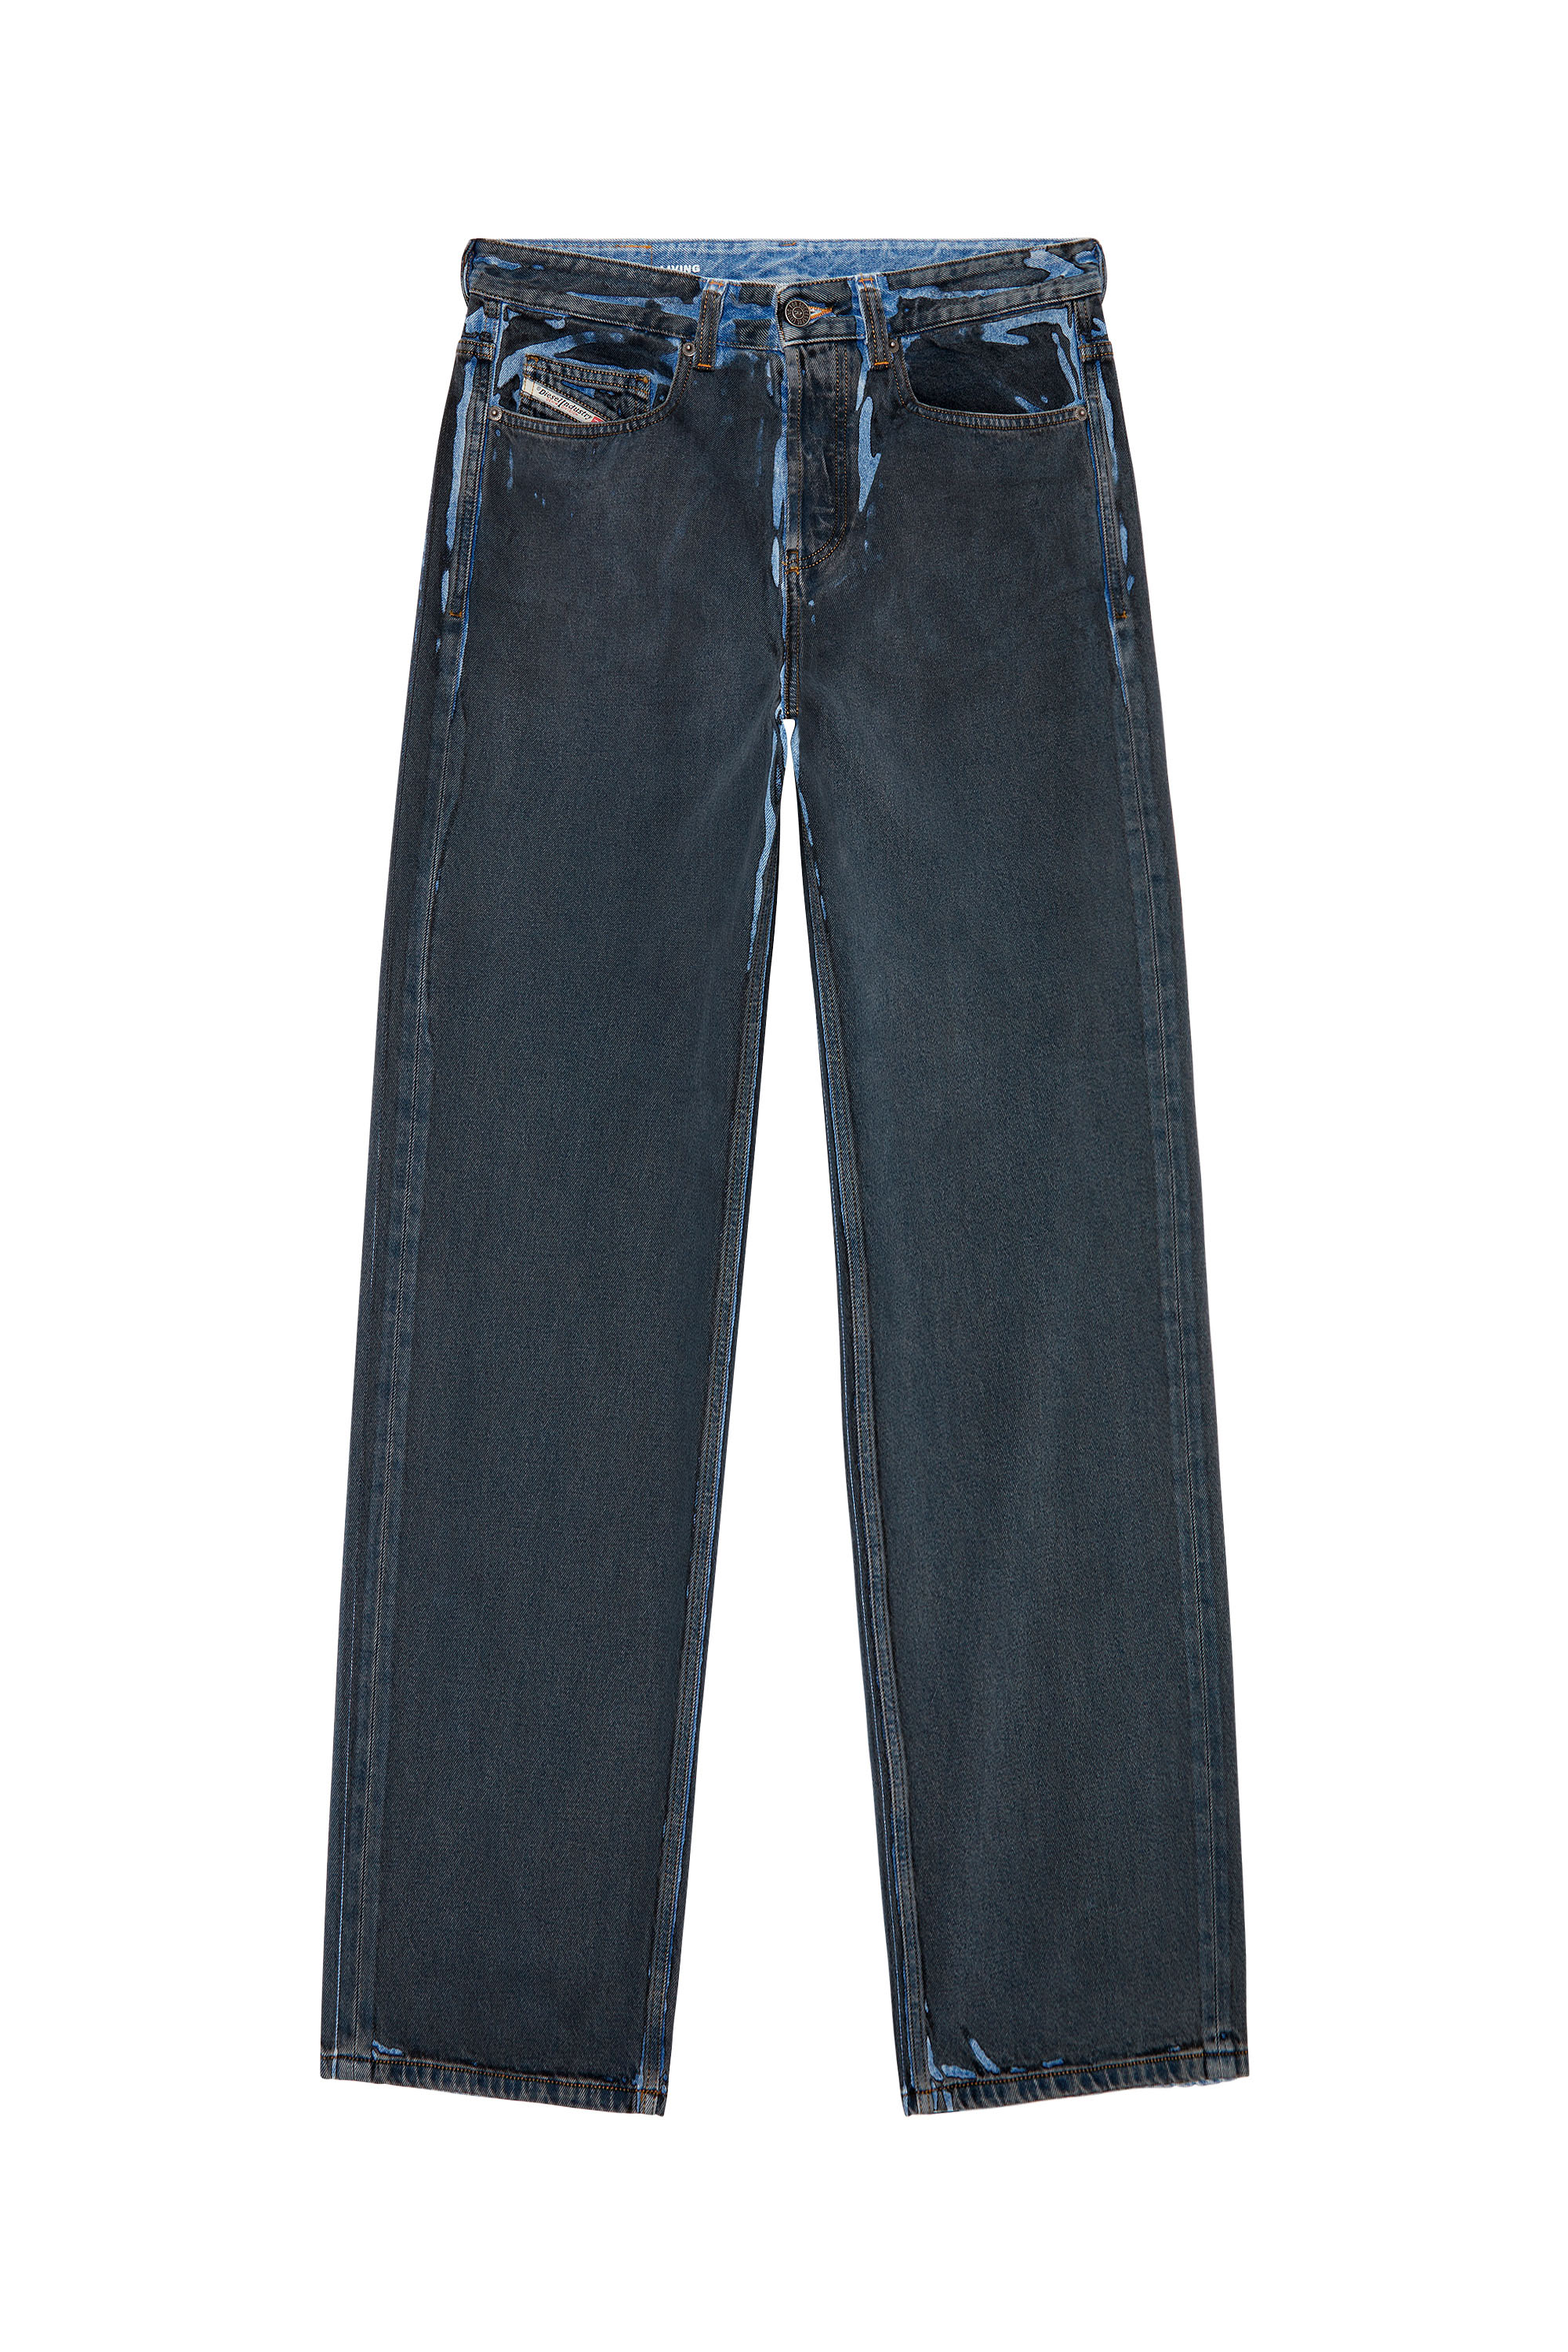 Diesel - Man Straight Jeans 2001 D-Macro 09I47, Black/Dark grey - Image 6